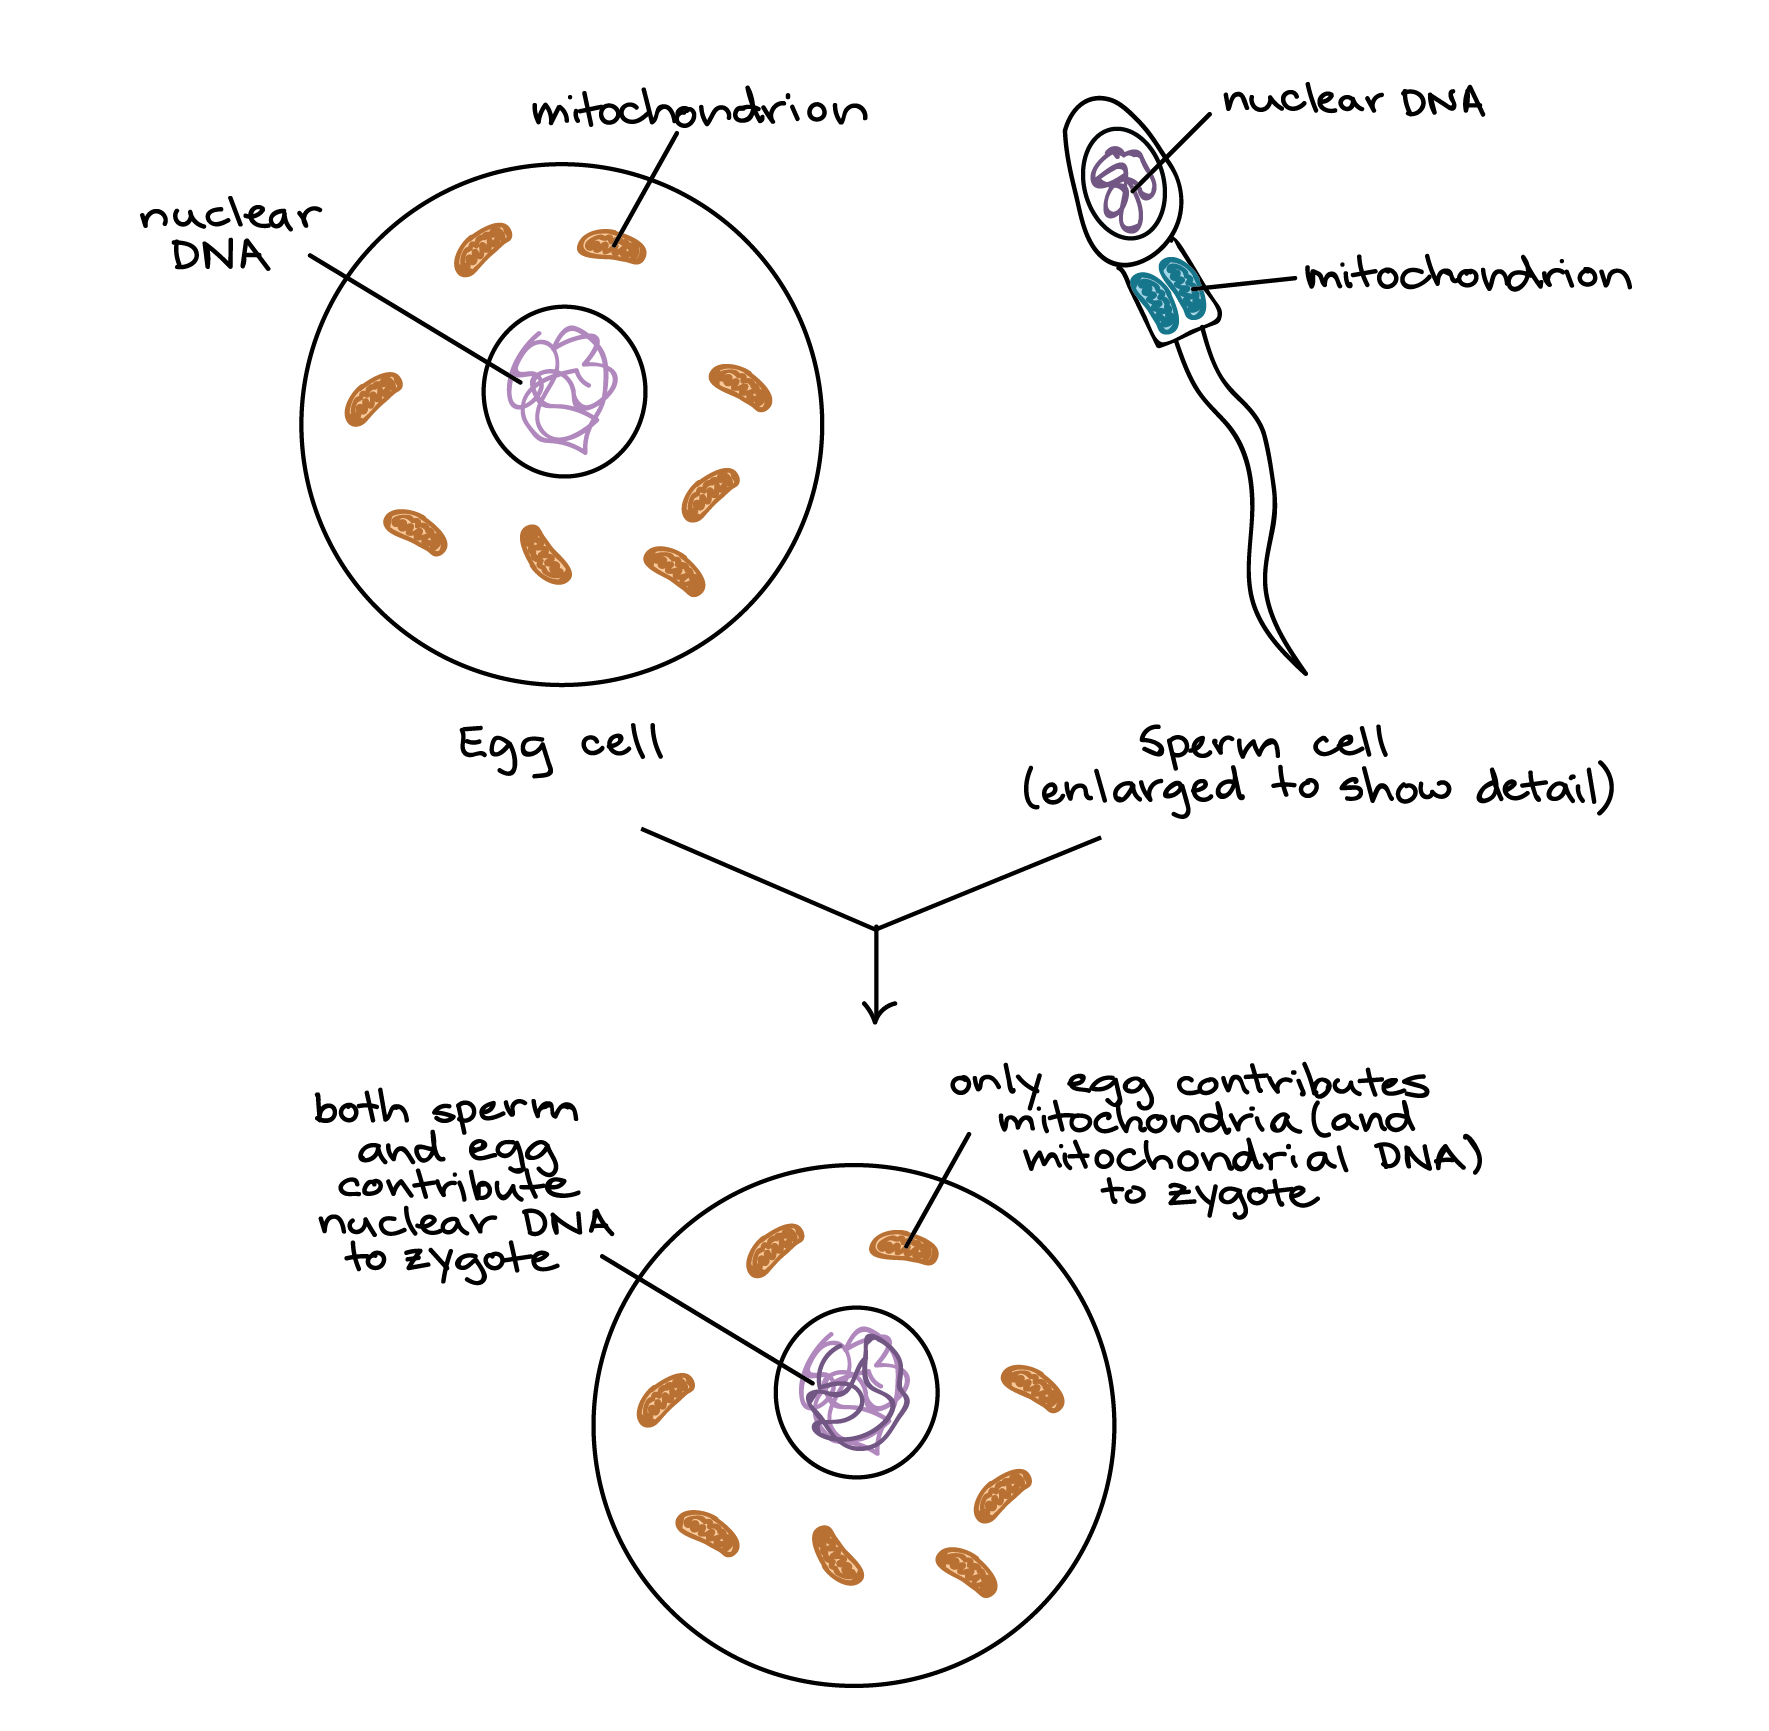 mitochondria transfer